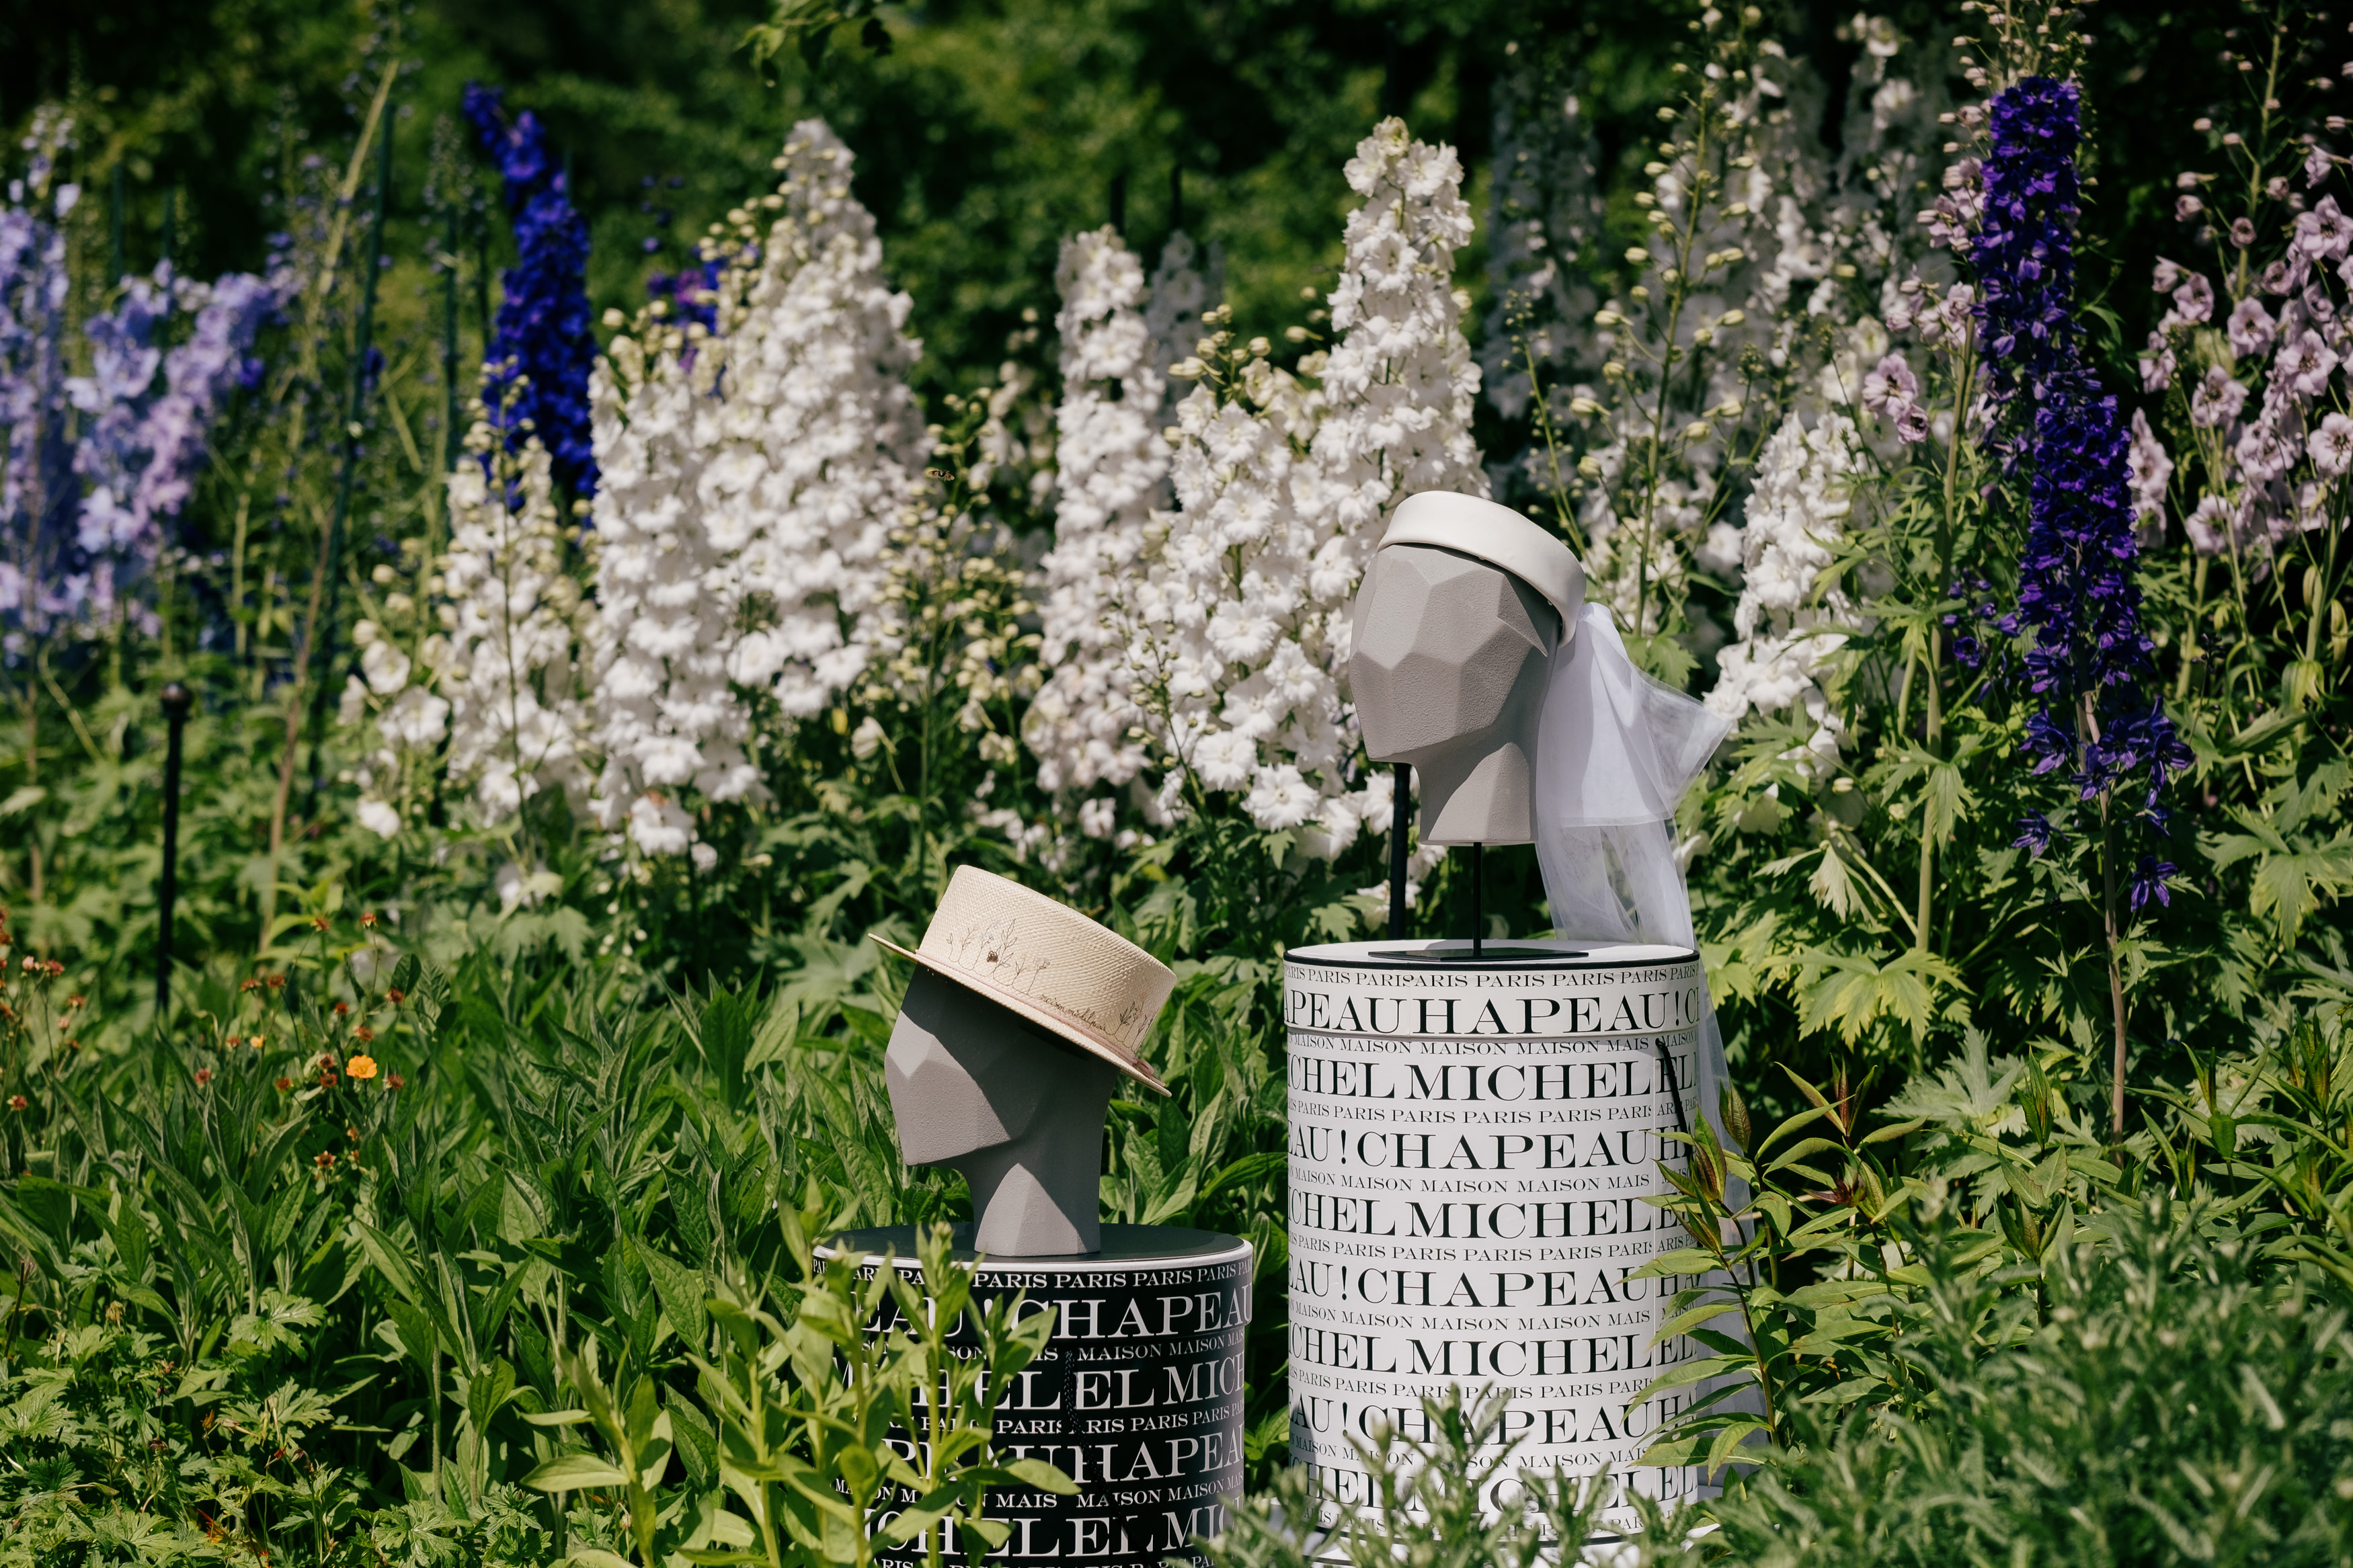 Maison Michel hats in the Kitchen Garden at Highgrove 